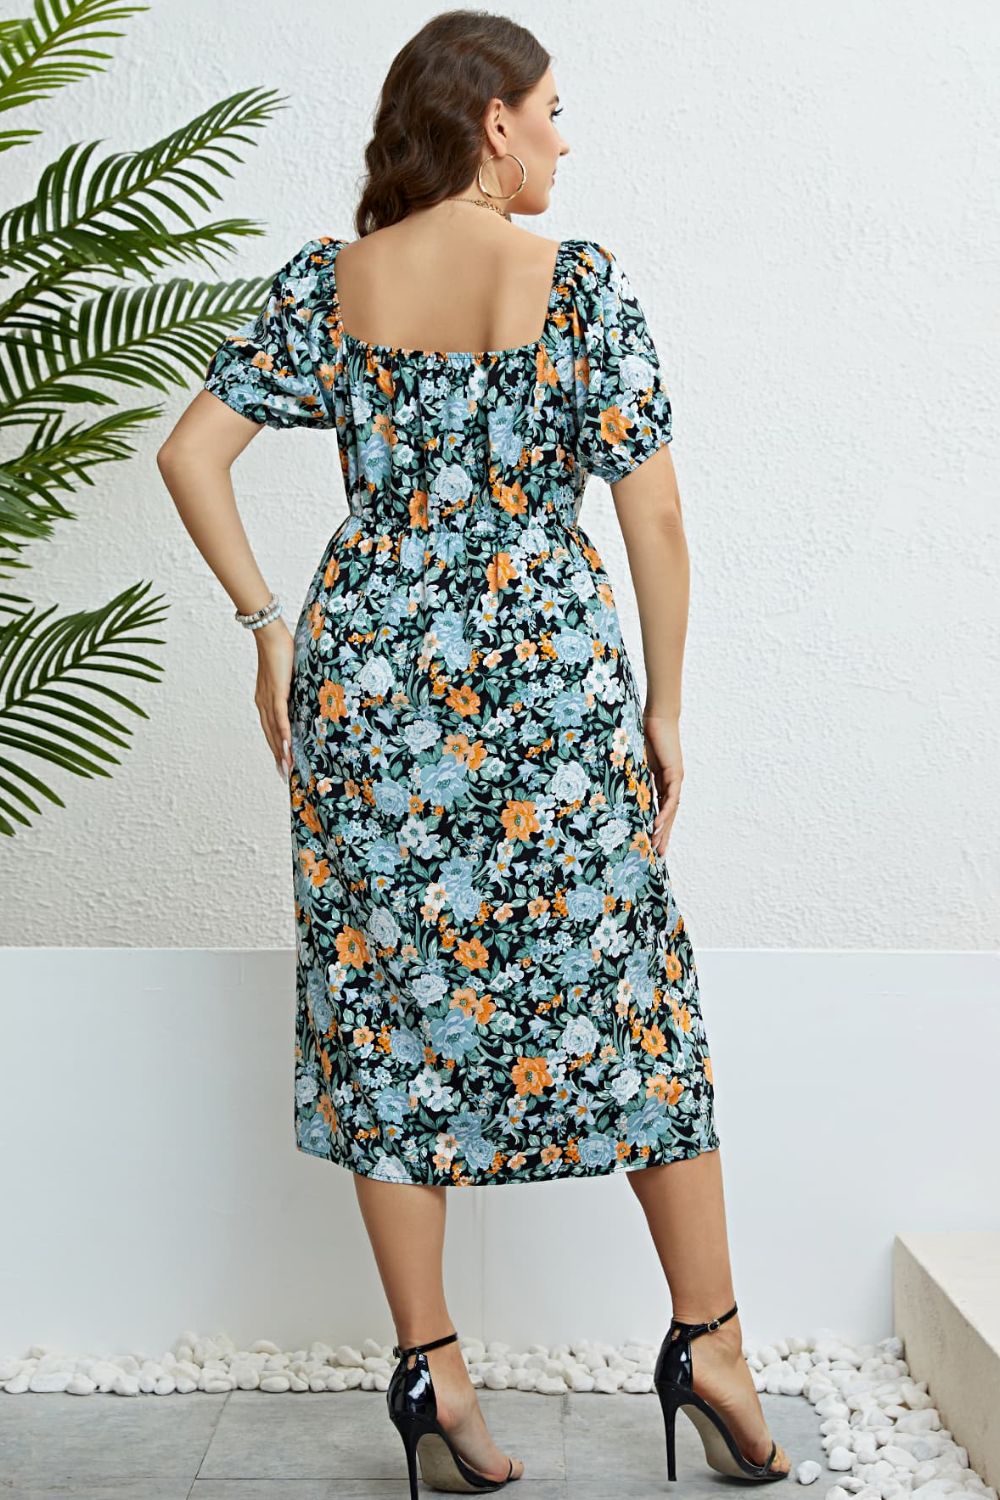 Floral Split Short Sleeve Dress - Online Only